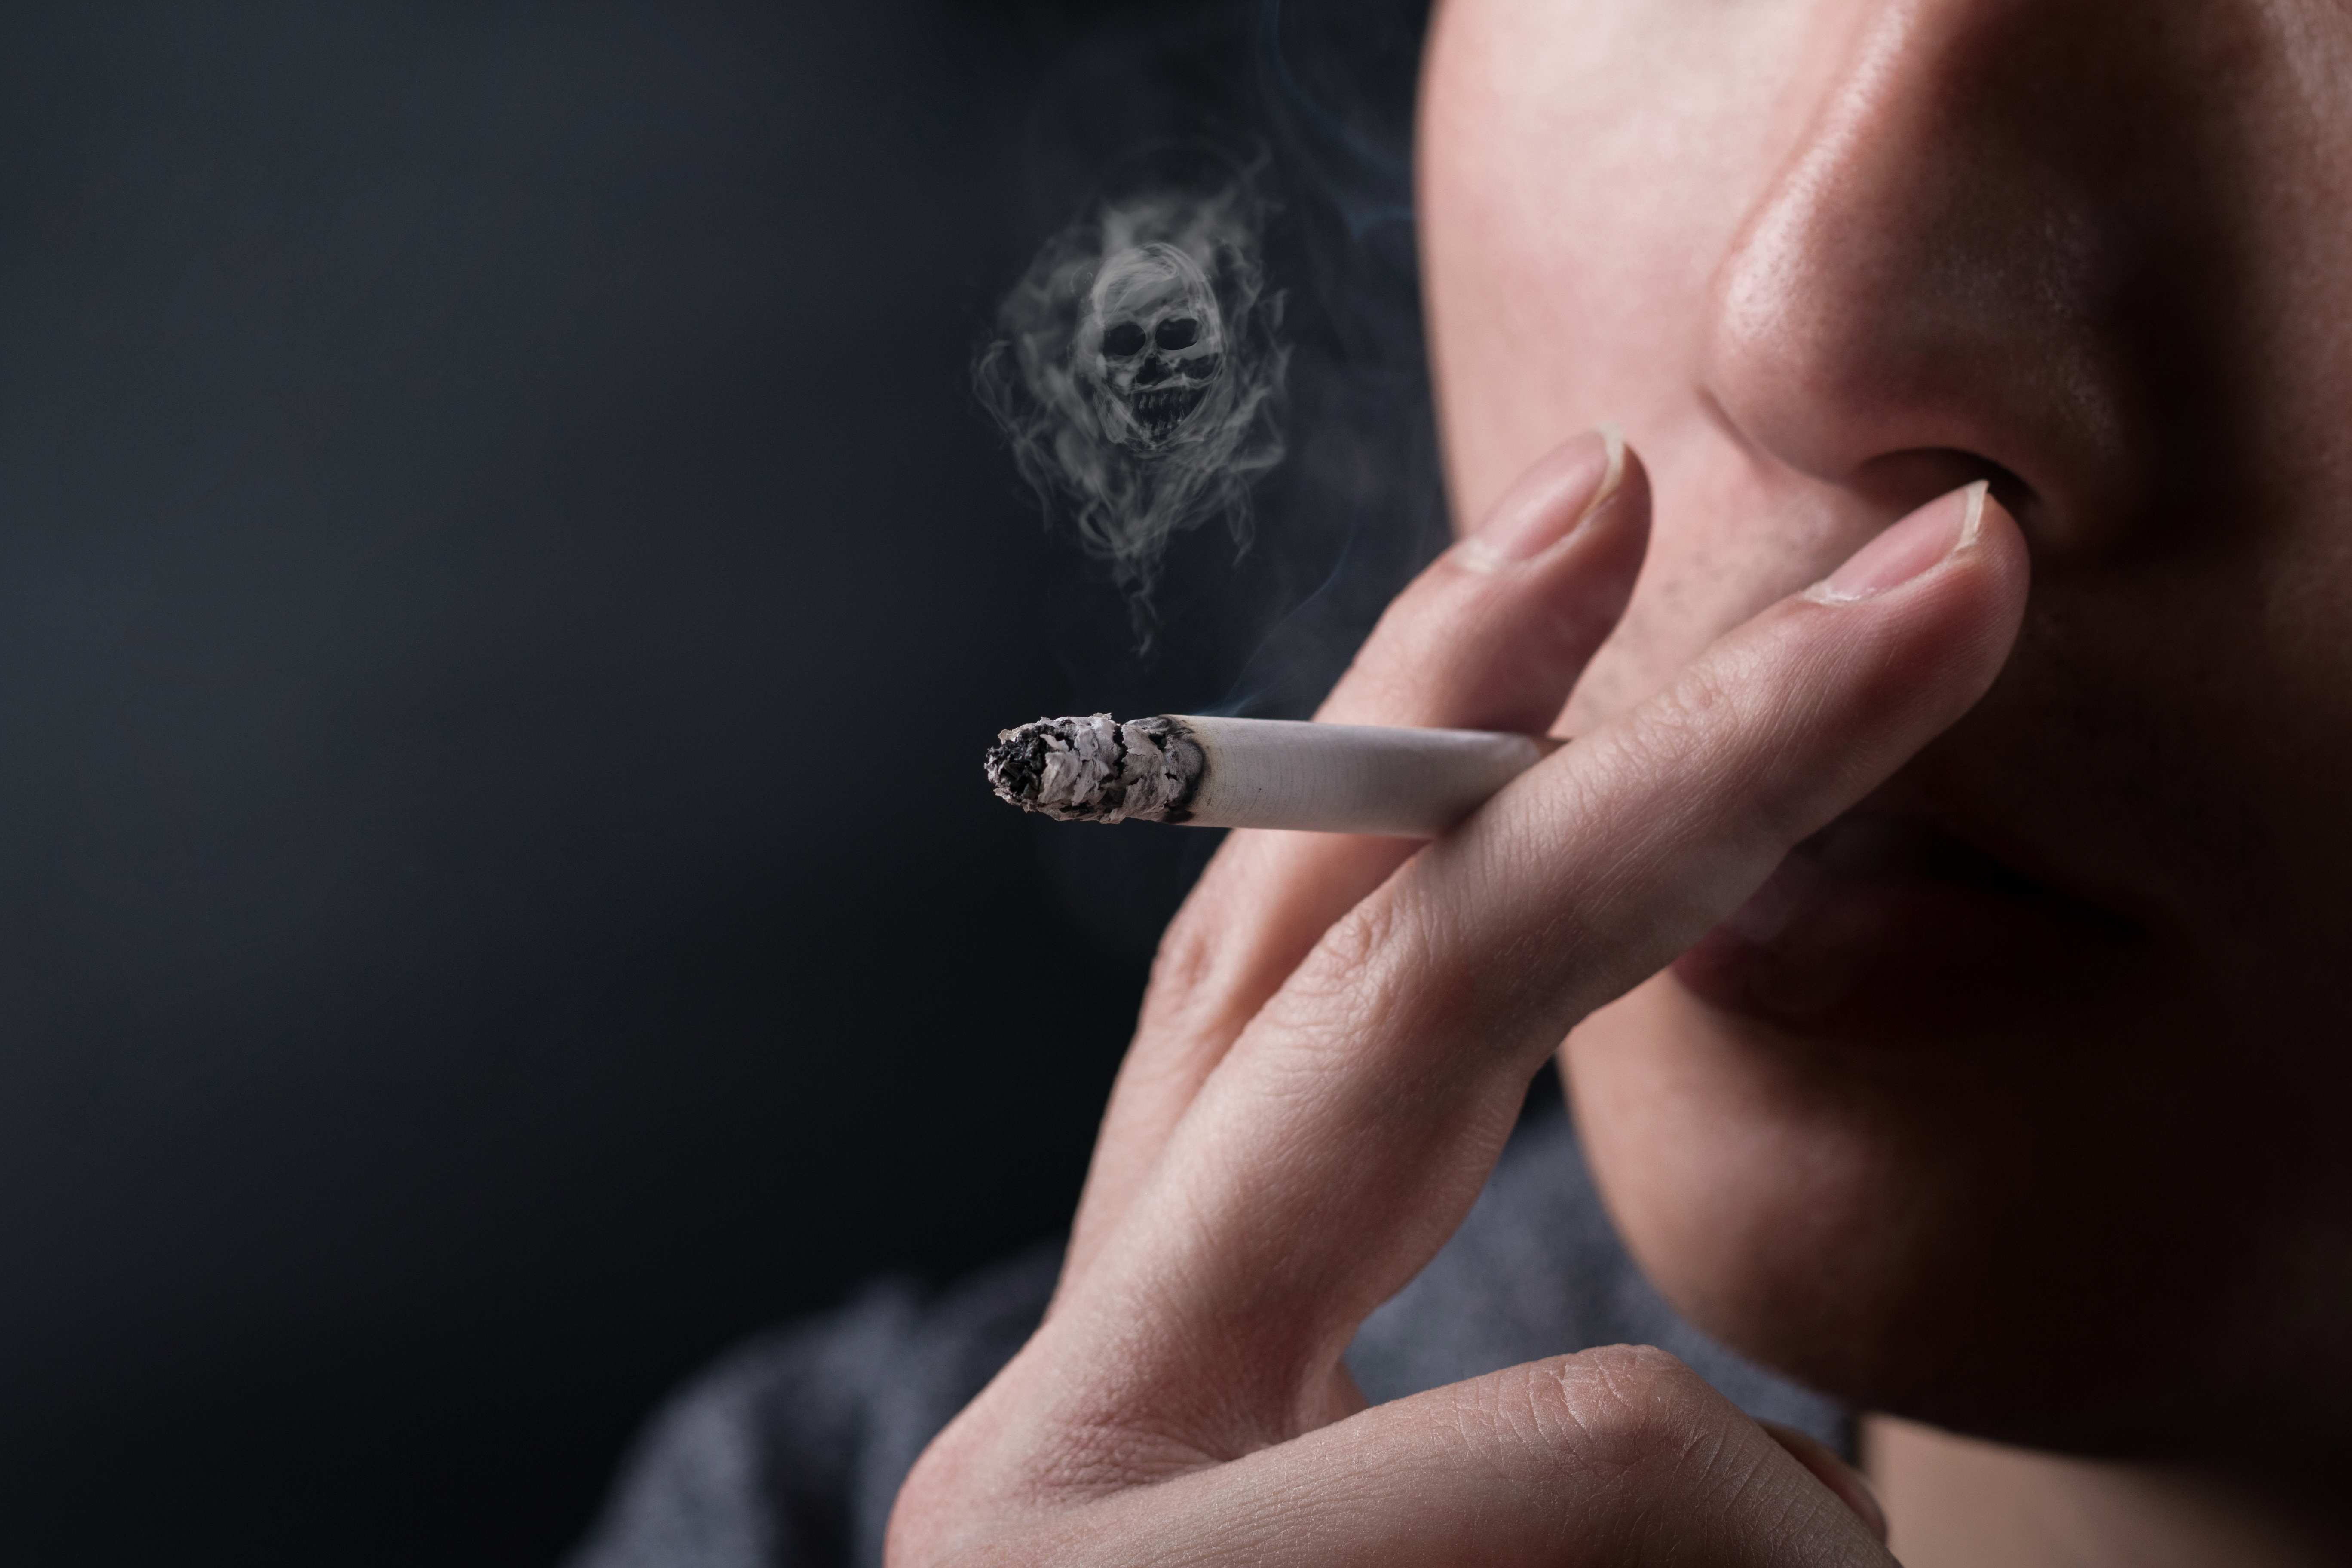 从不吸烟与既往吸烟的肺癌患者空气污染暴露情况比较